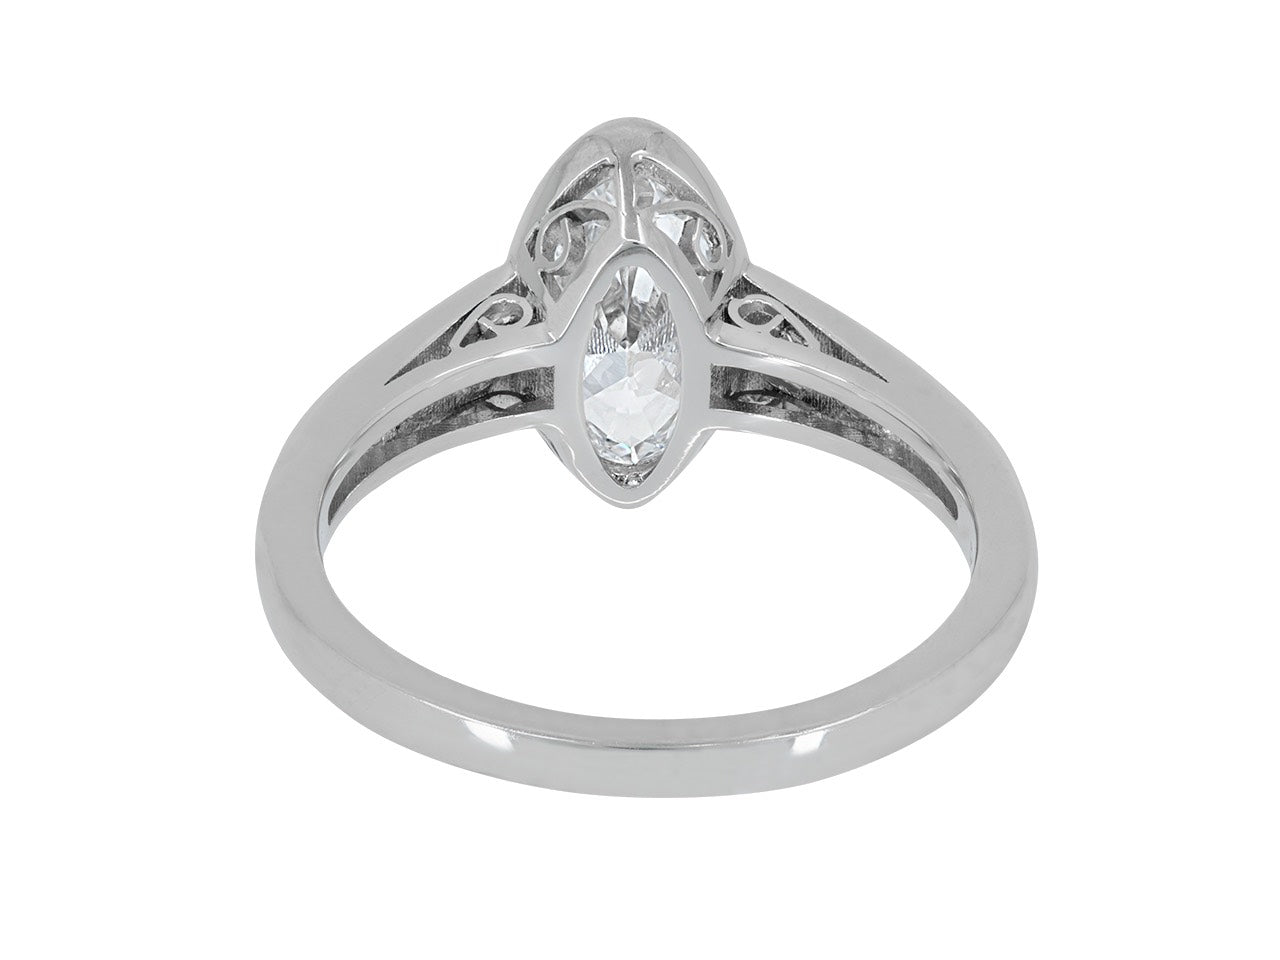 Beladora 'Bespoke' Moval Diamond Ring, 1.44 carat D/SI-1, in Platinum